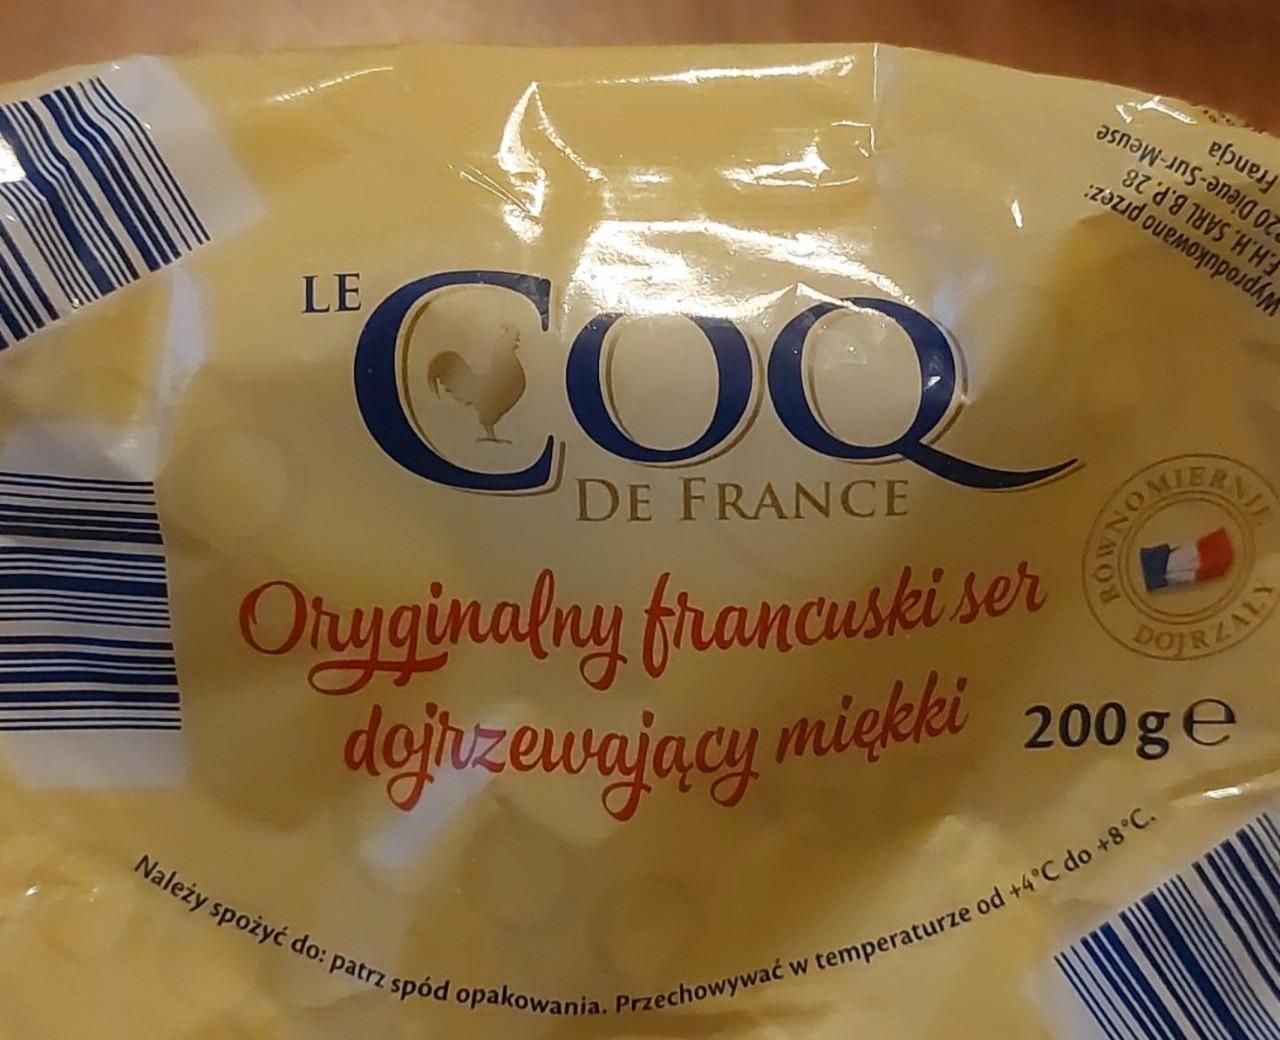 Fotografie - Oryginalny francuski ser dojrzewający miękki Le COQ